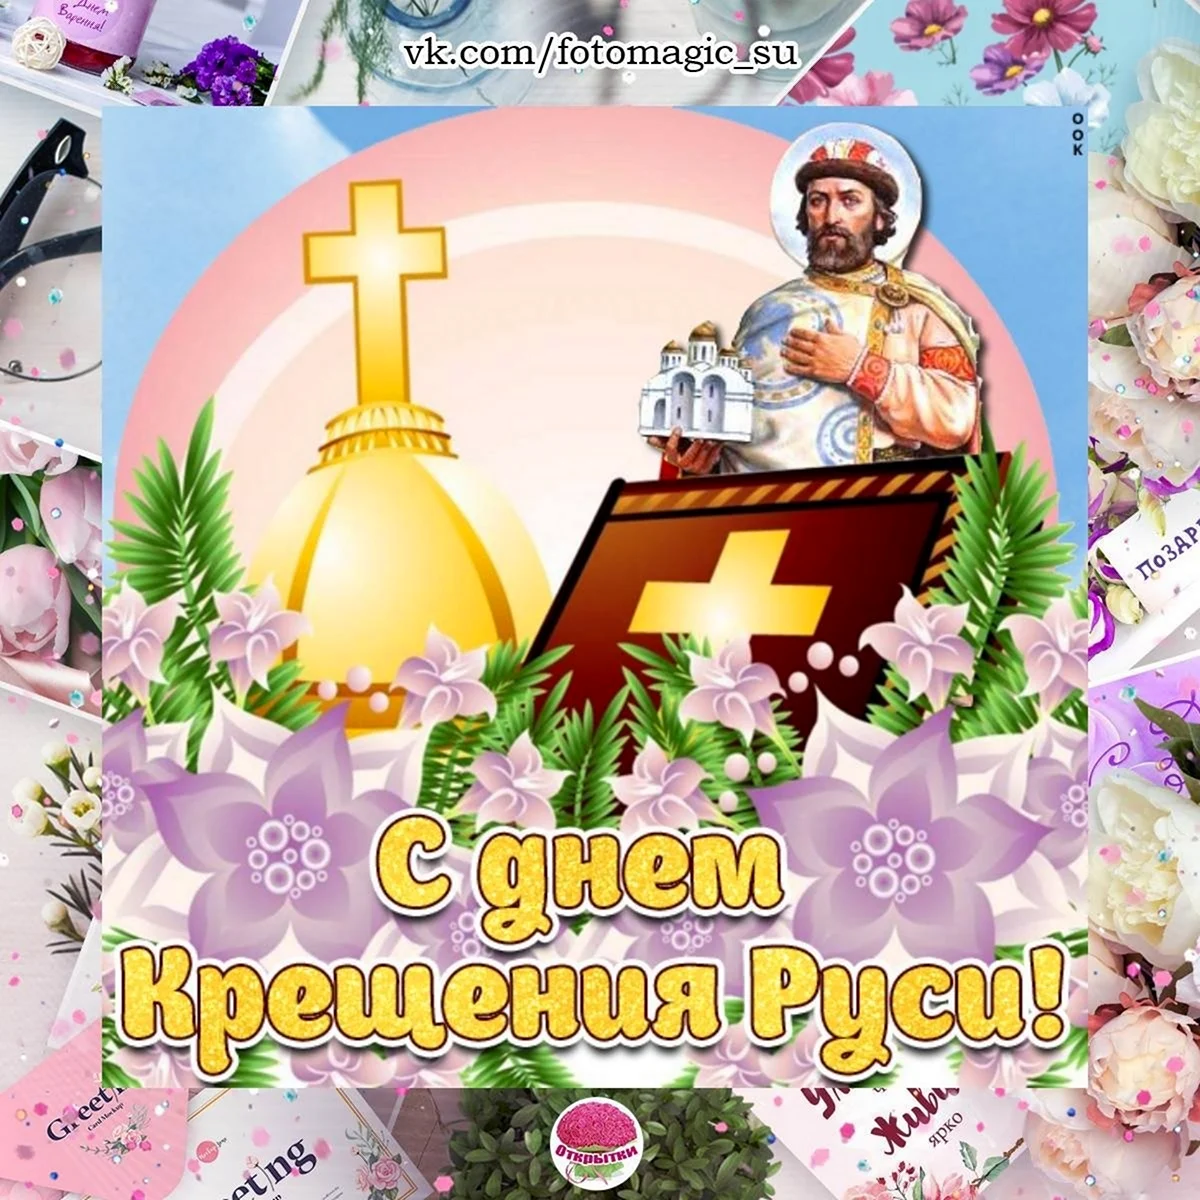 День крещения Руси